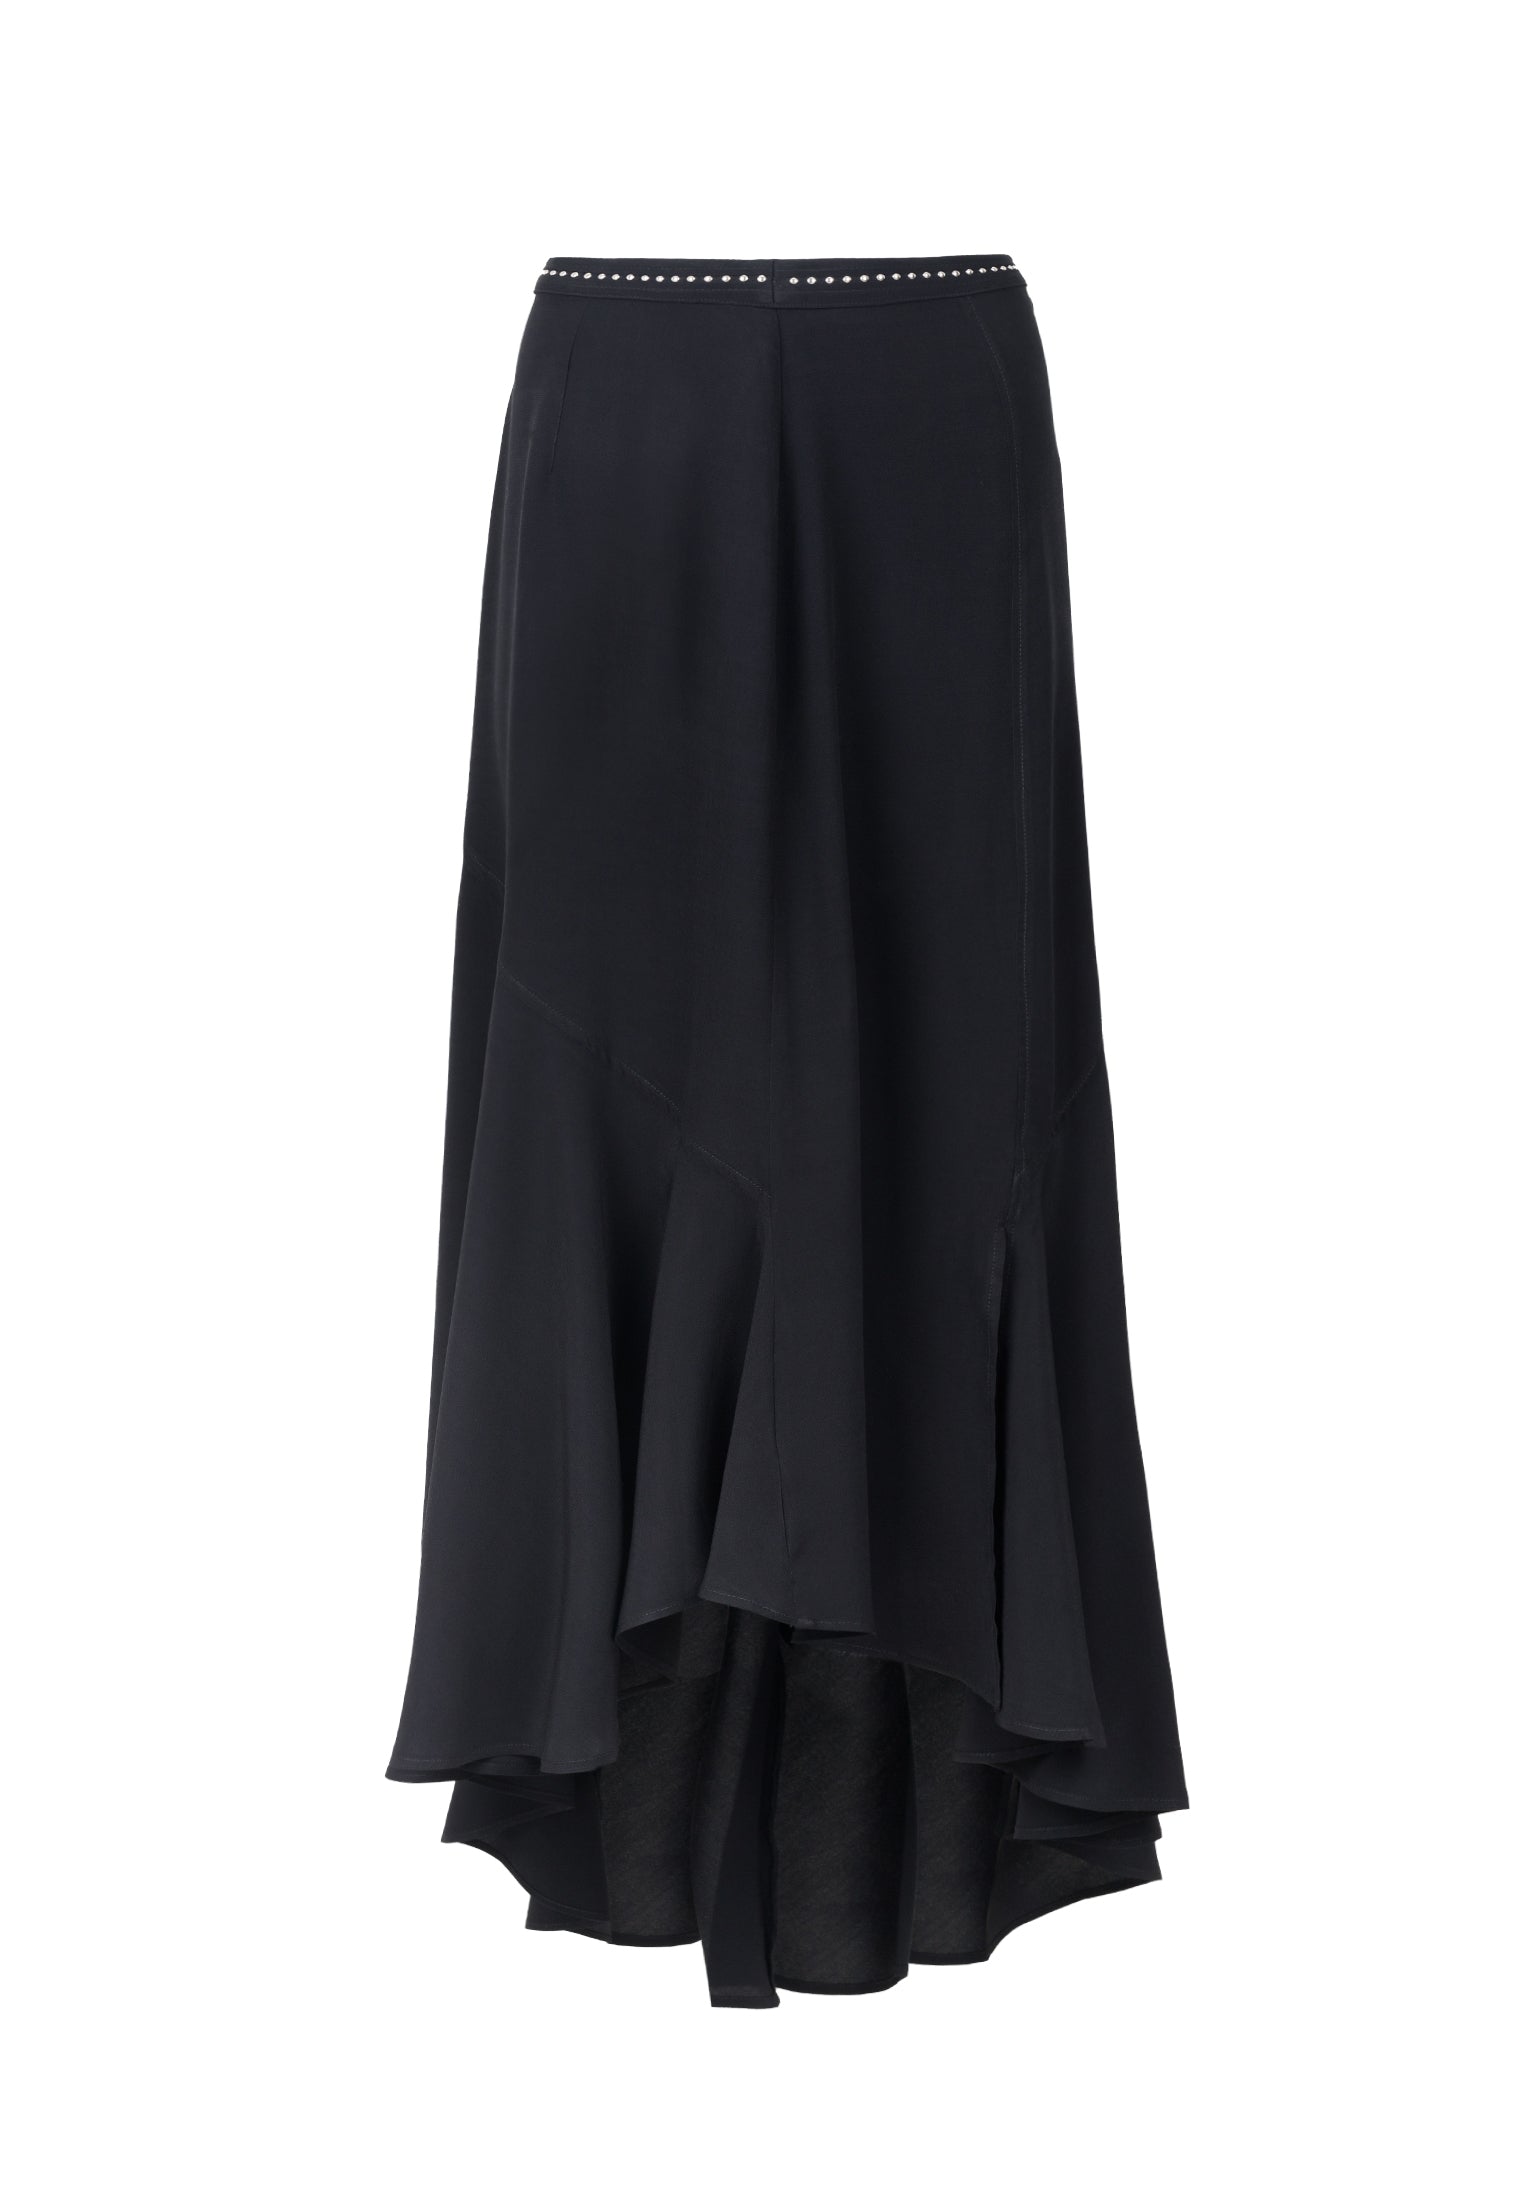 RELIGION Precious Black Maxi Skirt